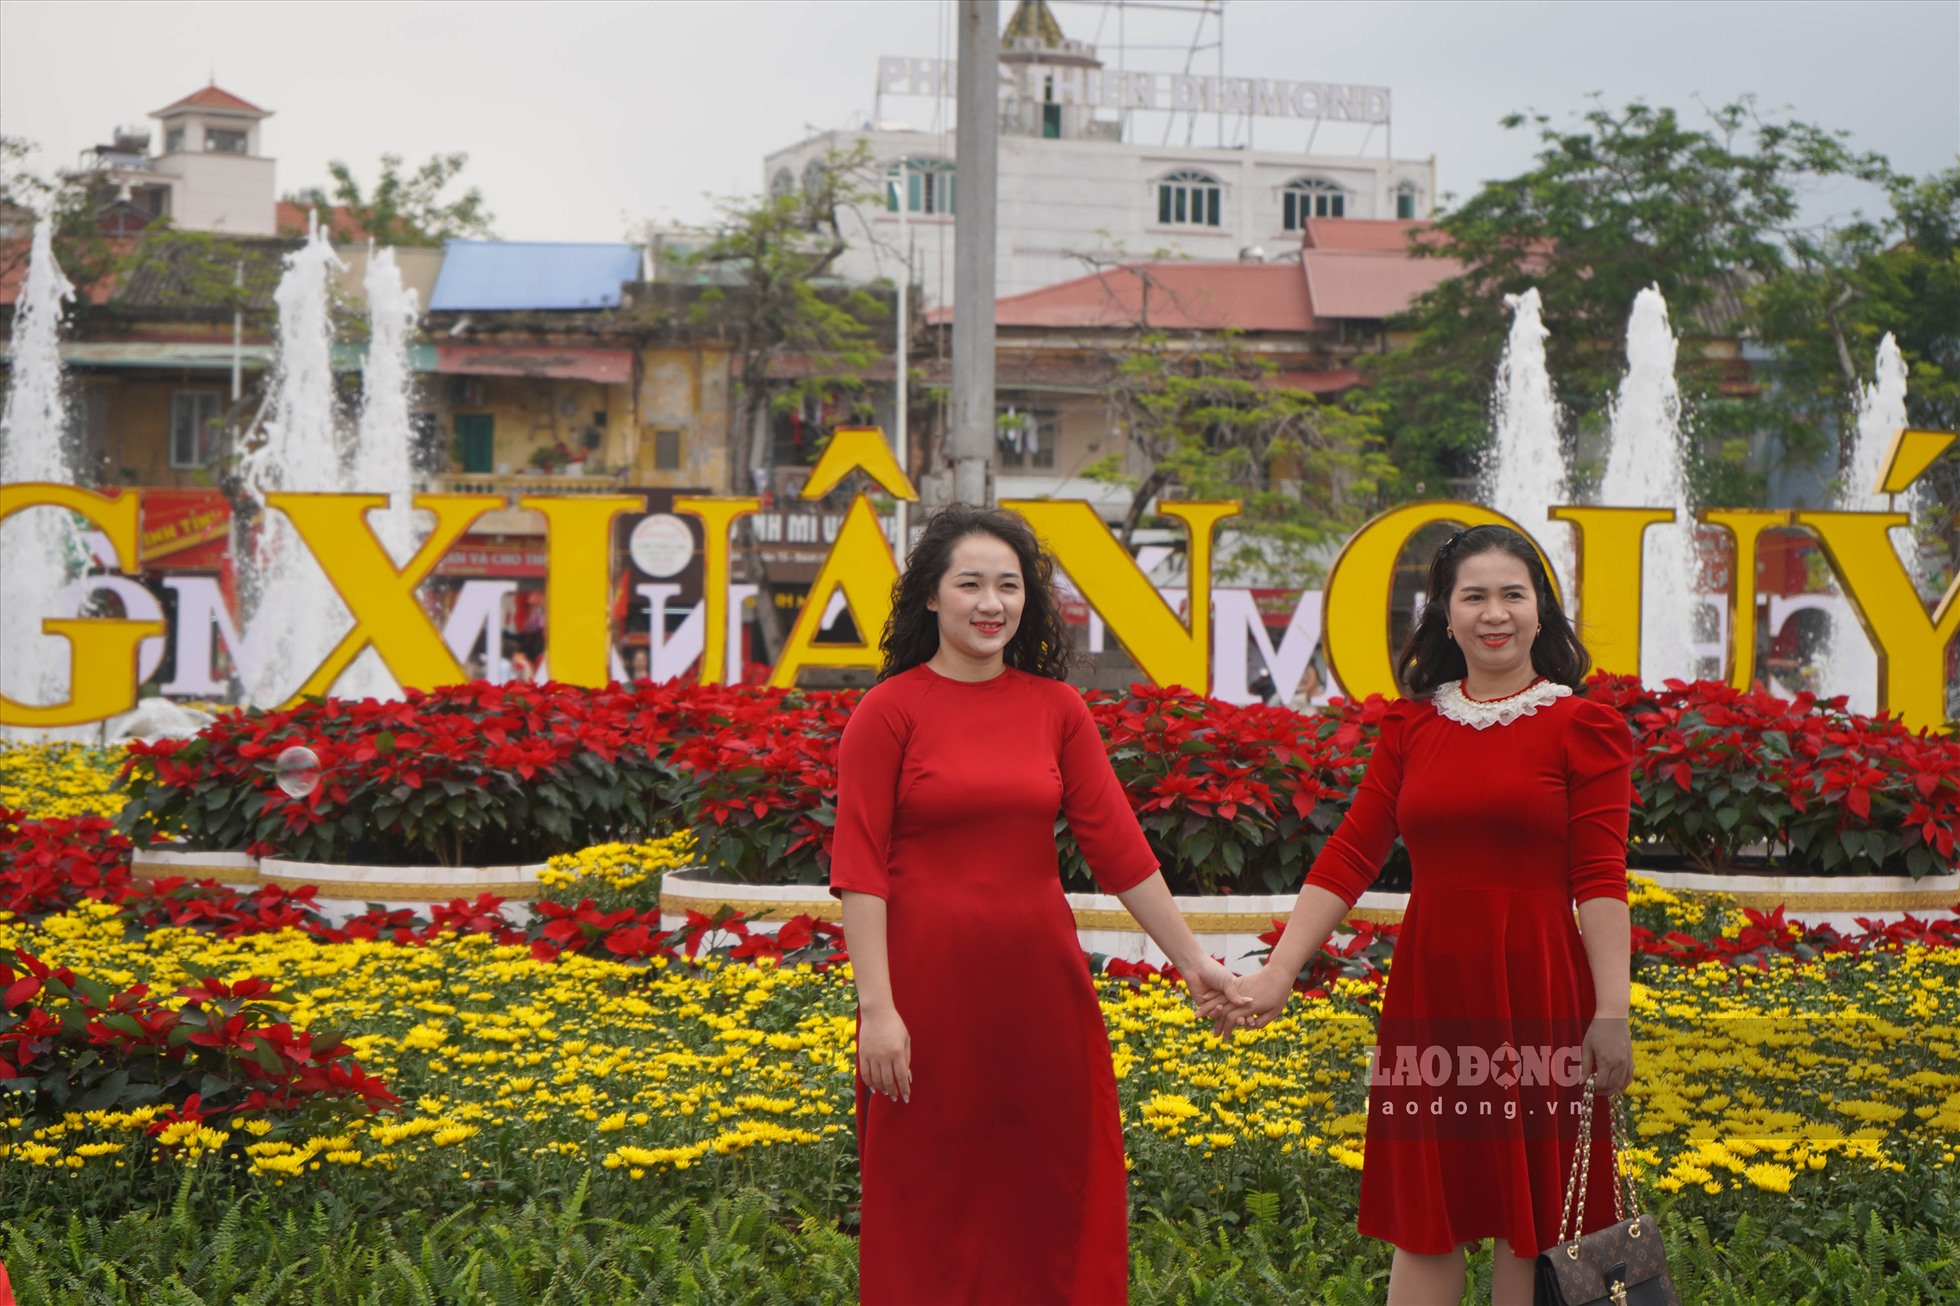 Theo ghi nhận của Lao Động, khu vực quảng trường Nhà hát lớn TP Hải Phòng tràn ngập sắc xuân với đủ các chậu hoa như: trạng nguyên, cúc, dạ yến thảo,...